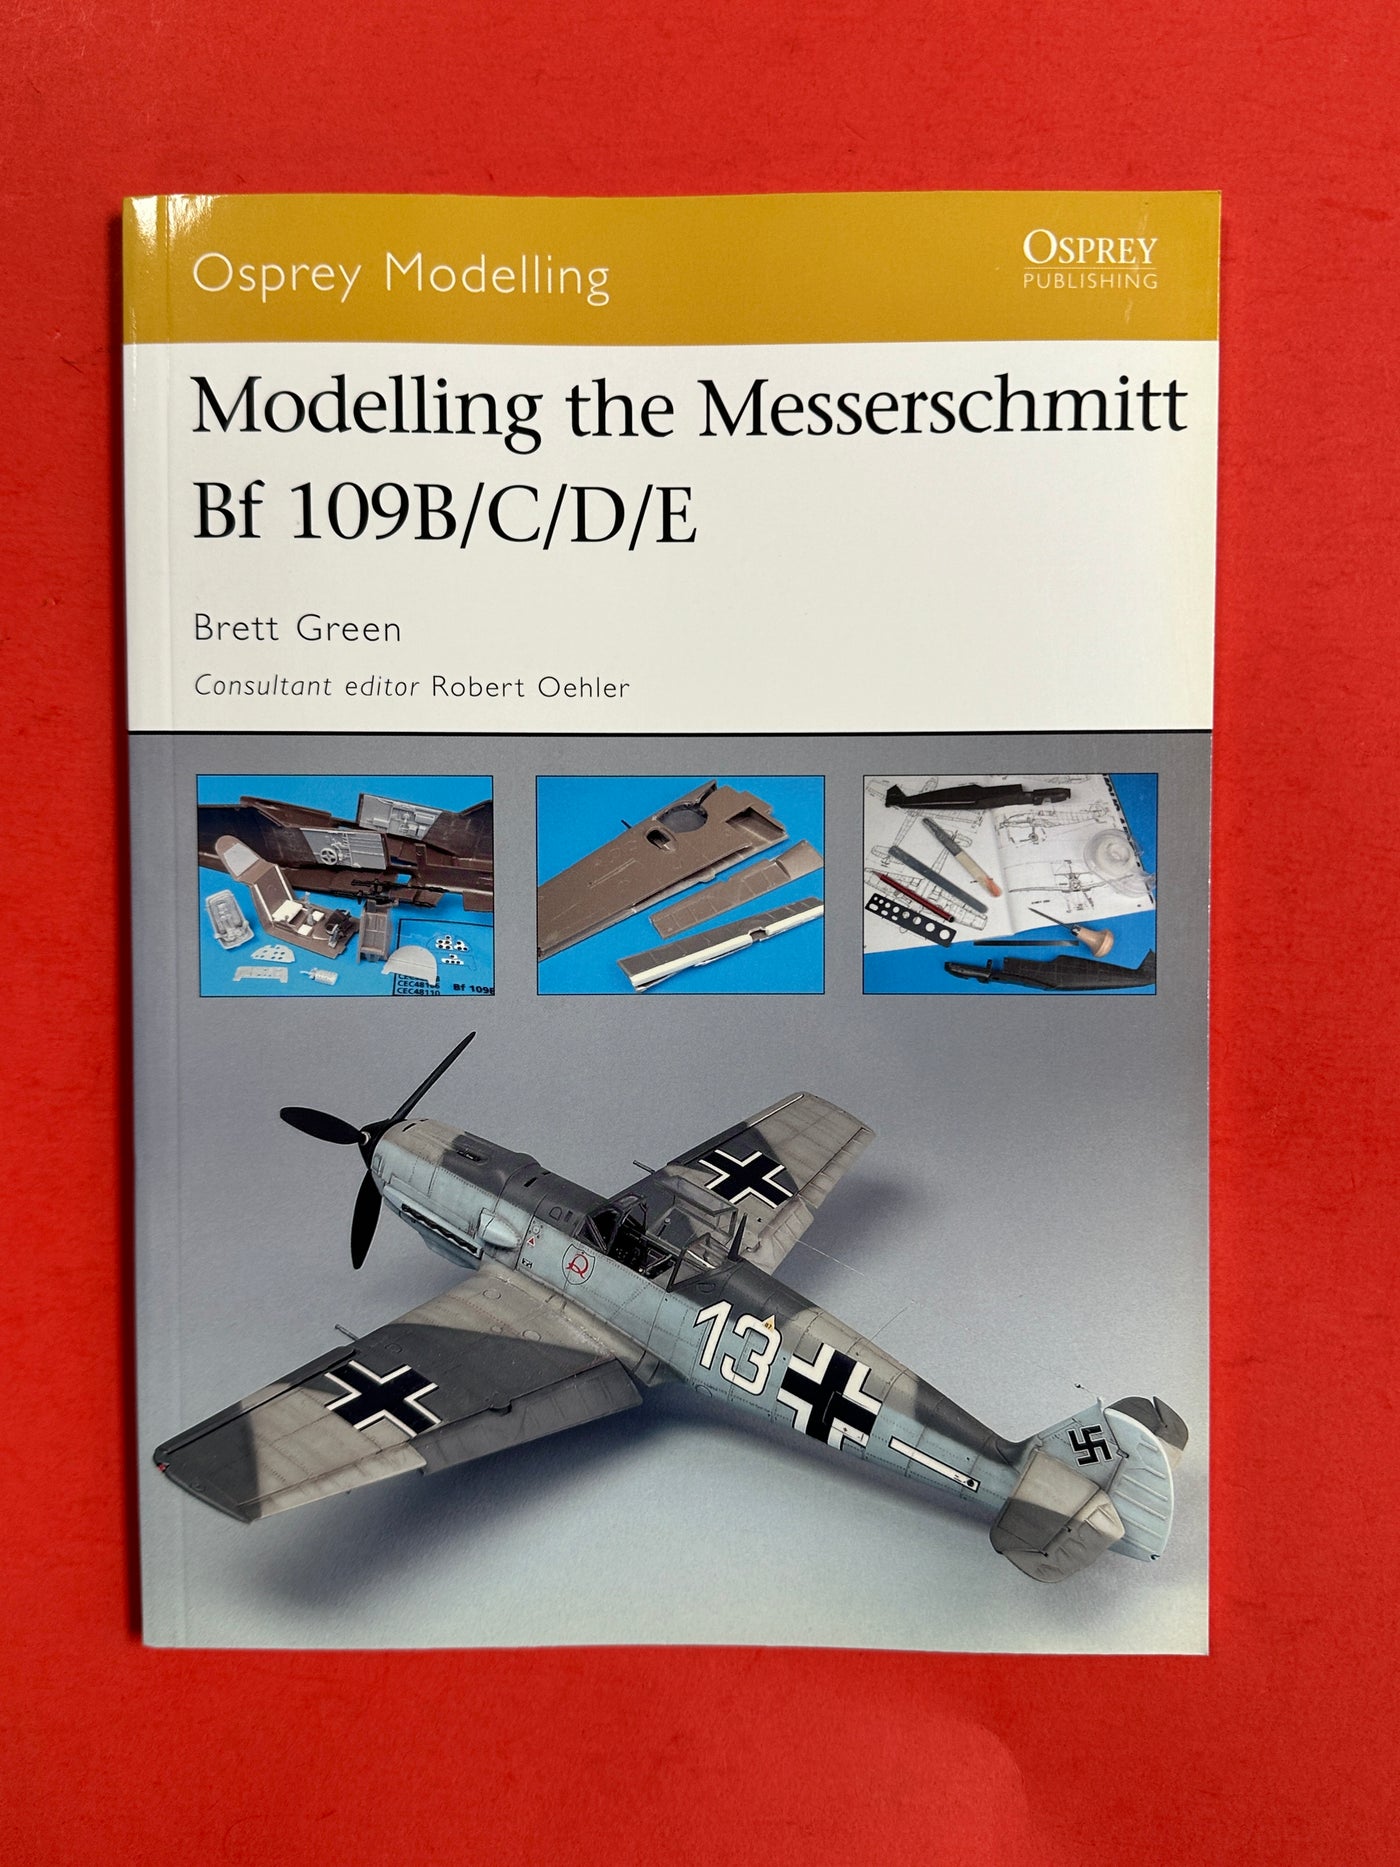 Osprey Modelling: Modelling the Messerschmitt Bf 109B/C/D/E